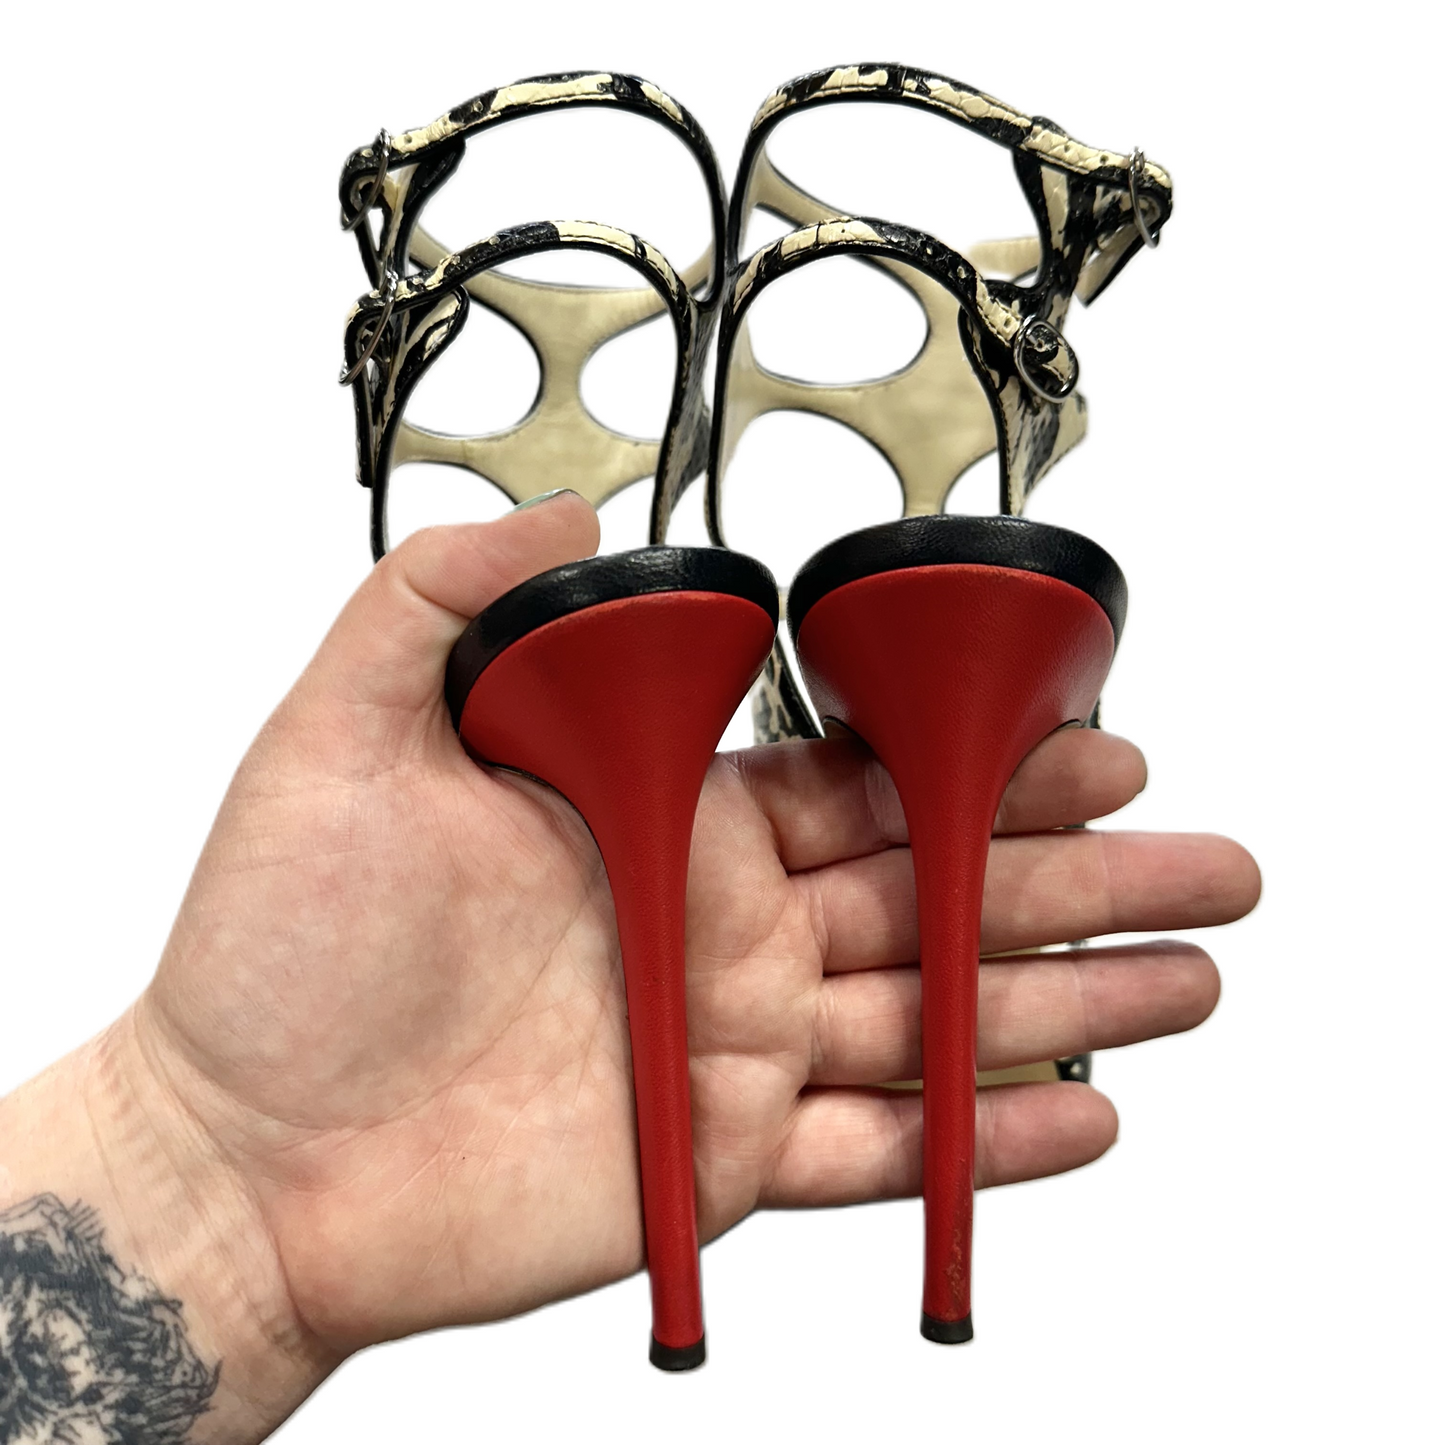 Shoes Heels Stiletto By Giuseppe Zanotti  Size: 9